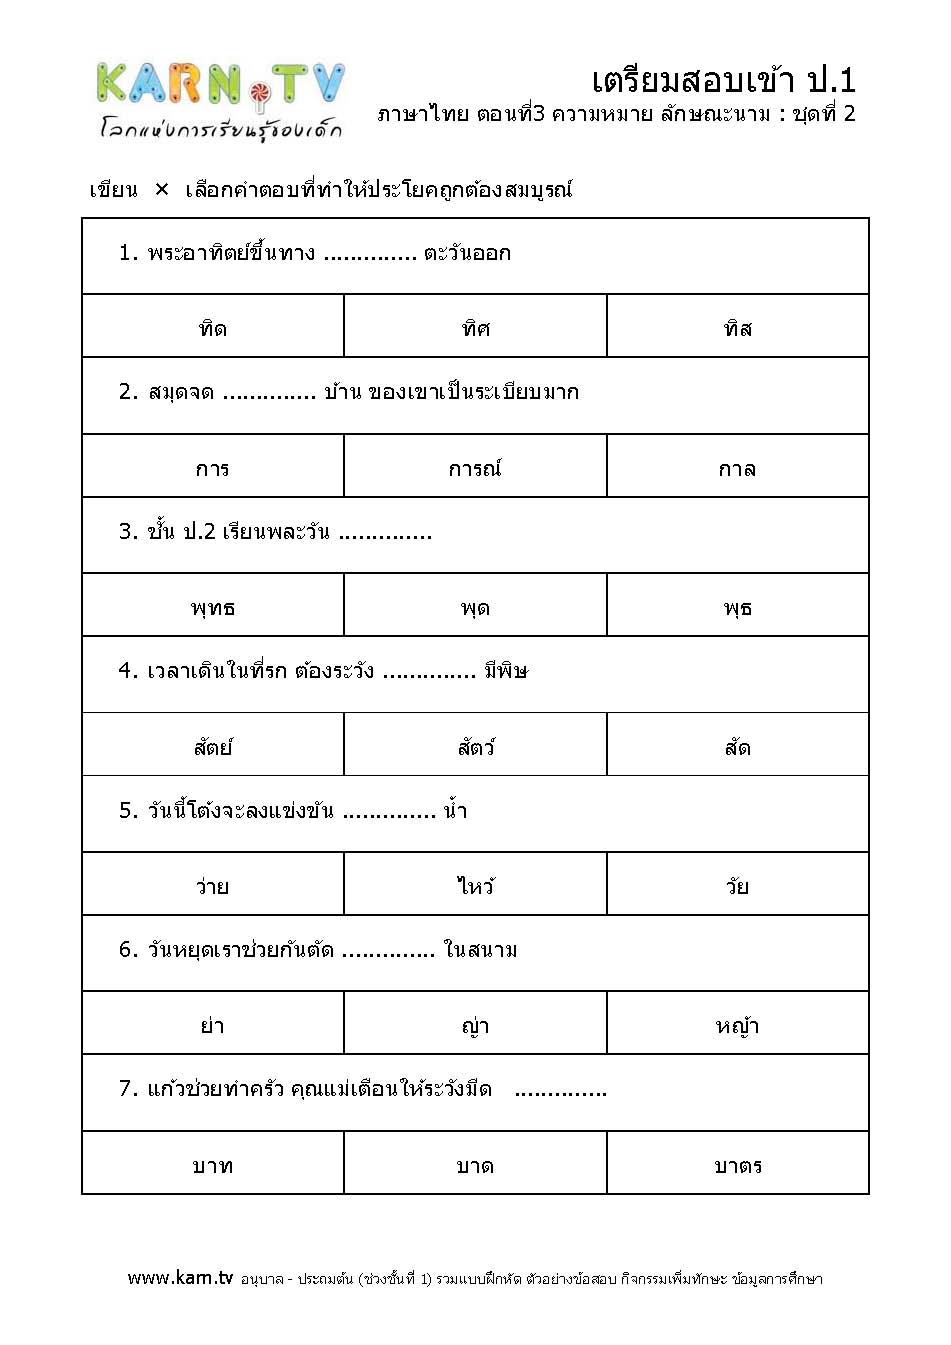 ภาษาไทย 3 ความหมาย ลักษณะนาม ชุด 2